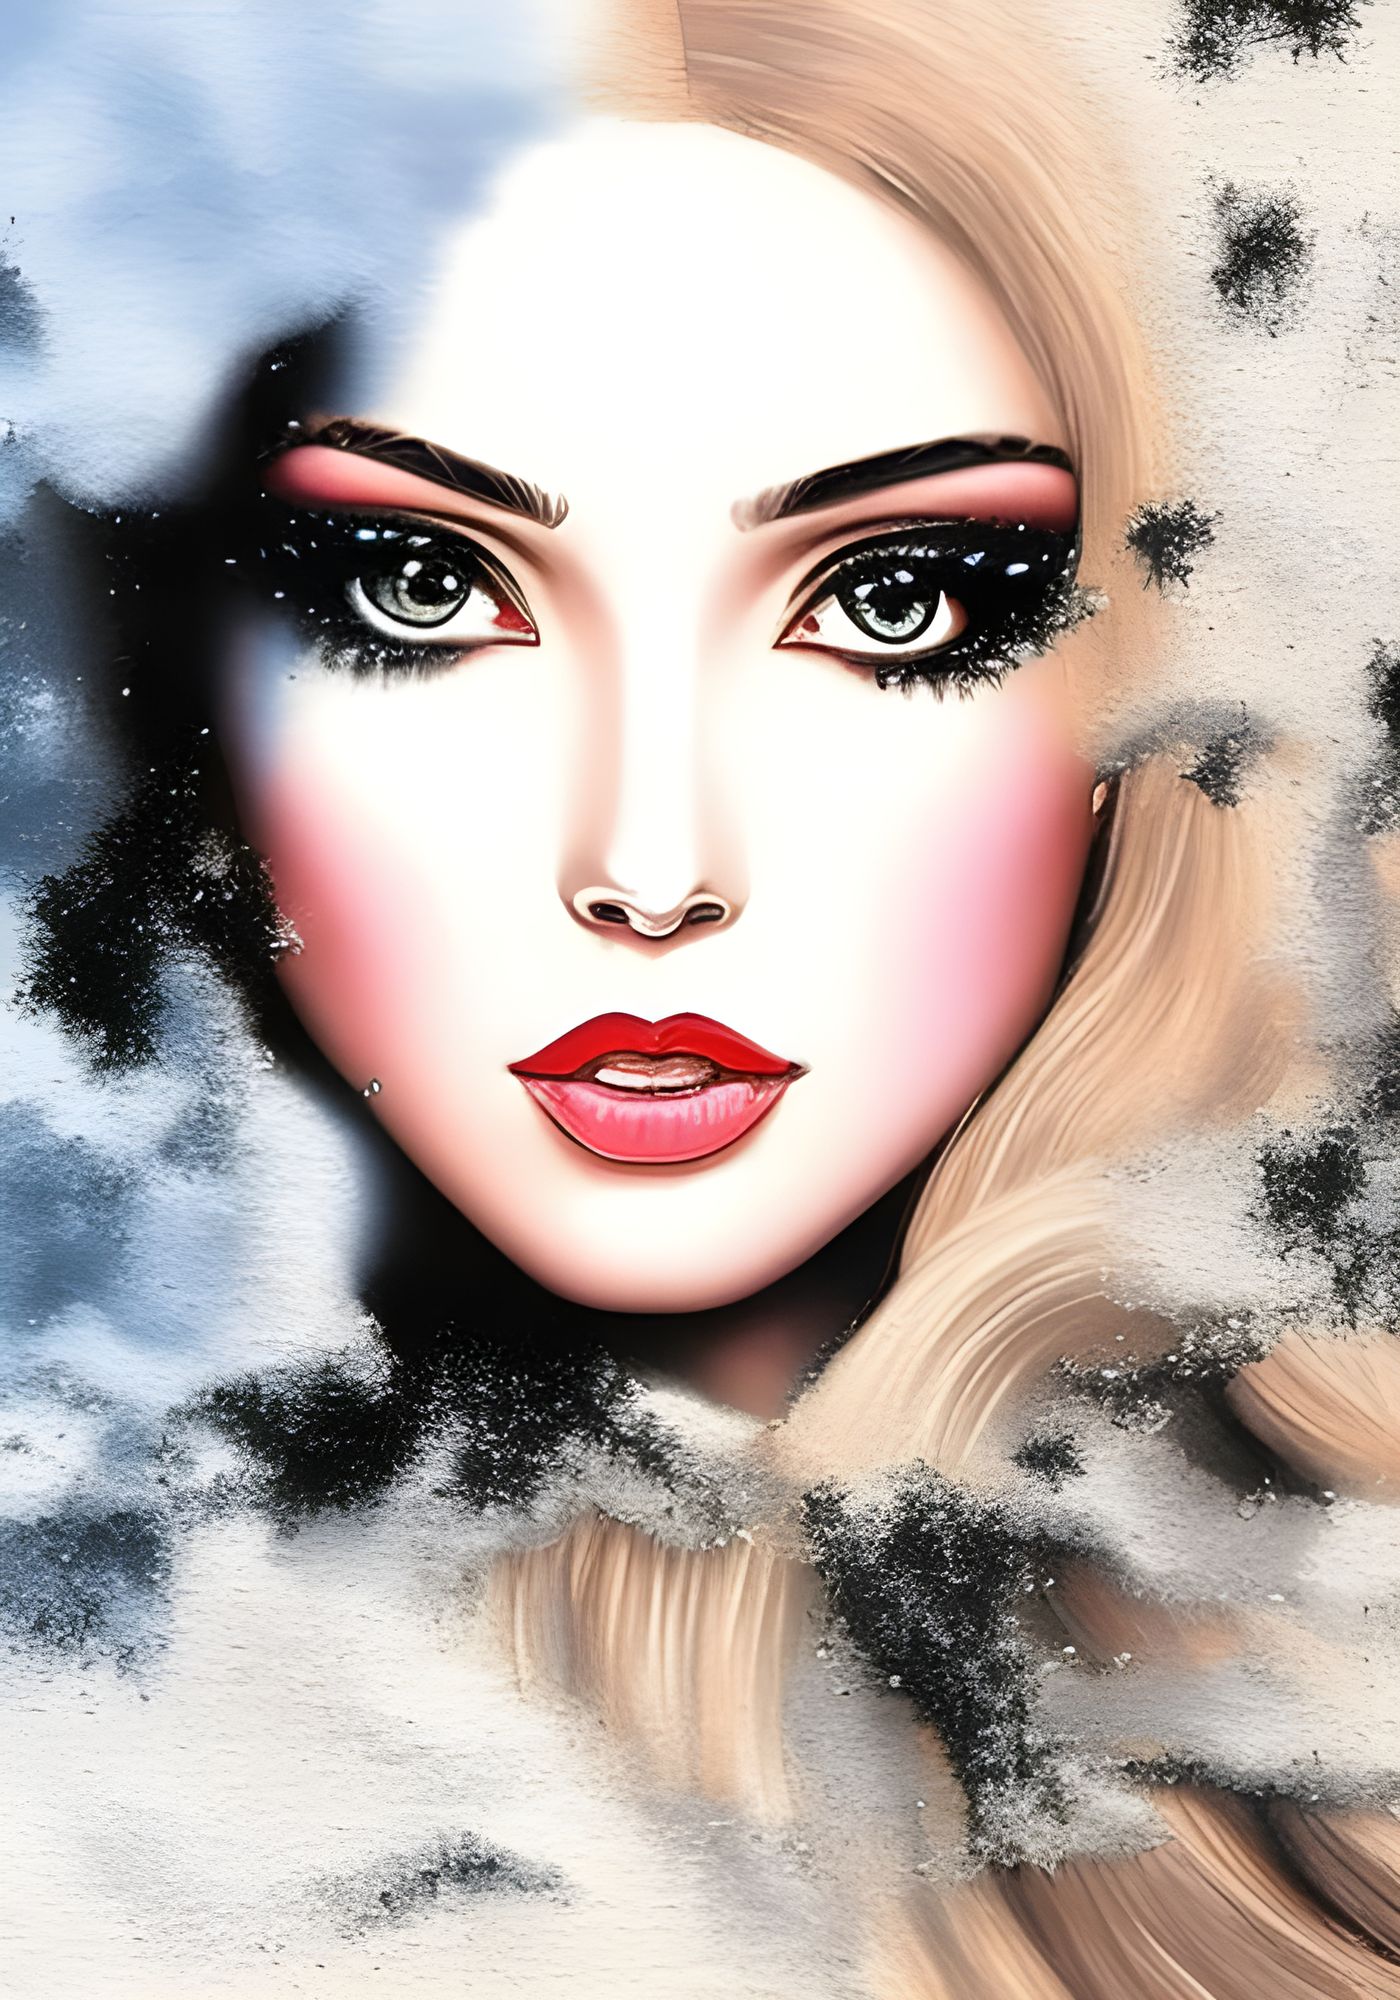 Eyeliner types | Makeup illustration, Art tutorials, Eyeliner designs